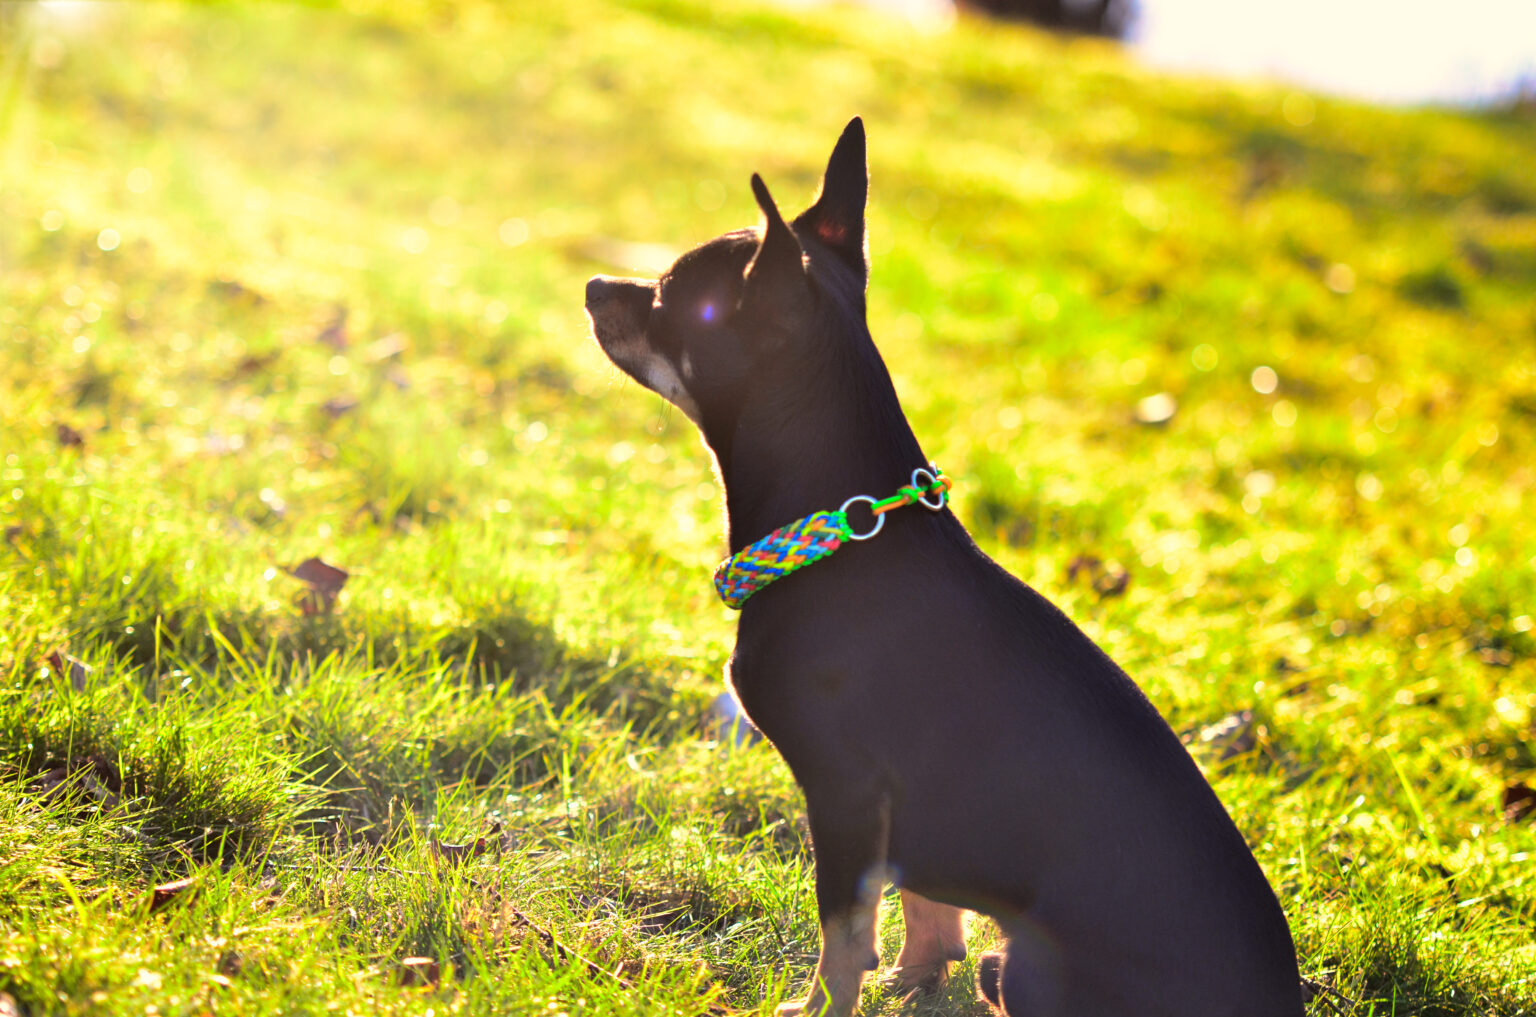 Ob Dobermann oder Chihuahua, in der richtigen Cordstärke können die Halsbänder einfach von jedem Hund getragen werden.  Und so gibt es auch für den kleinen Dobby ein tolles, ausdrucksstarkes Kunterbunt!